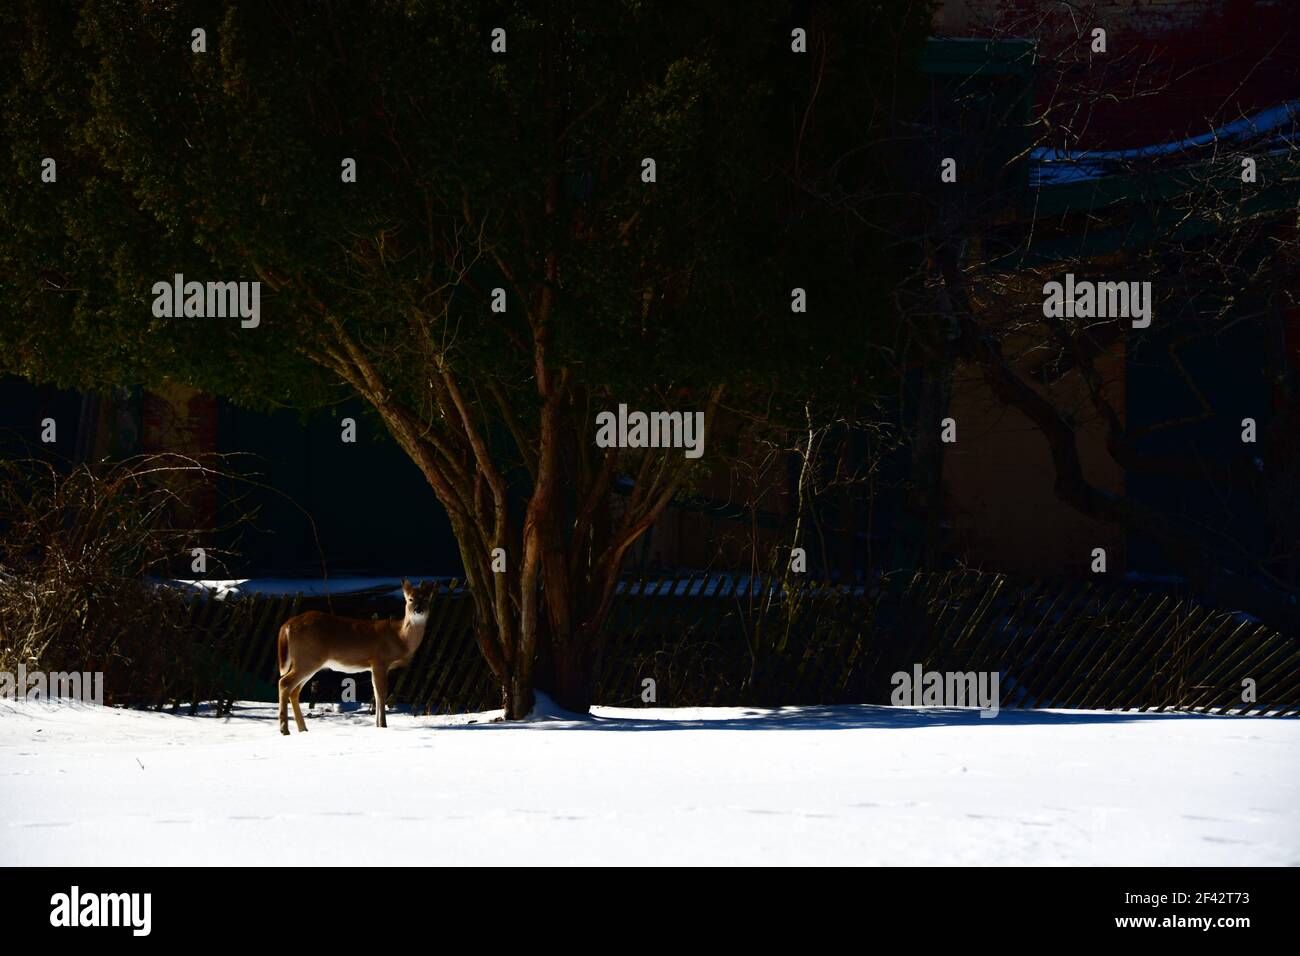 un cerf seul debout dans un champ enneigé devant de grands arbres sur un après-midi brillamment éclairé Banque D'Images